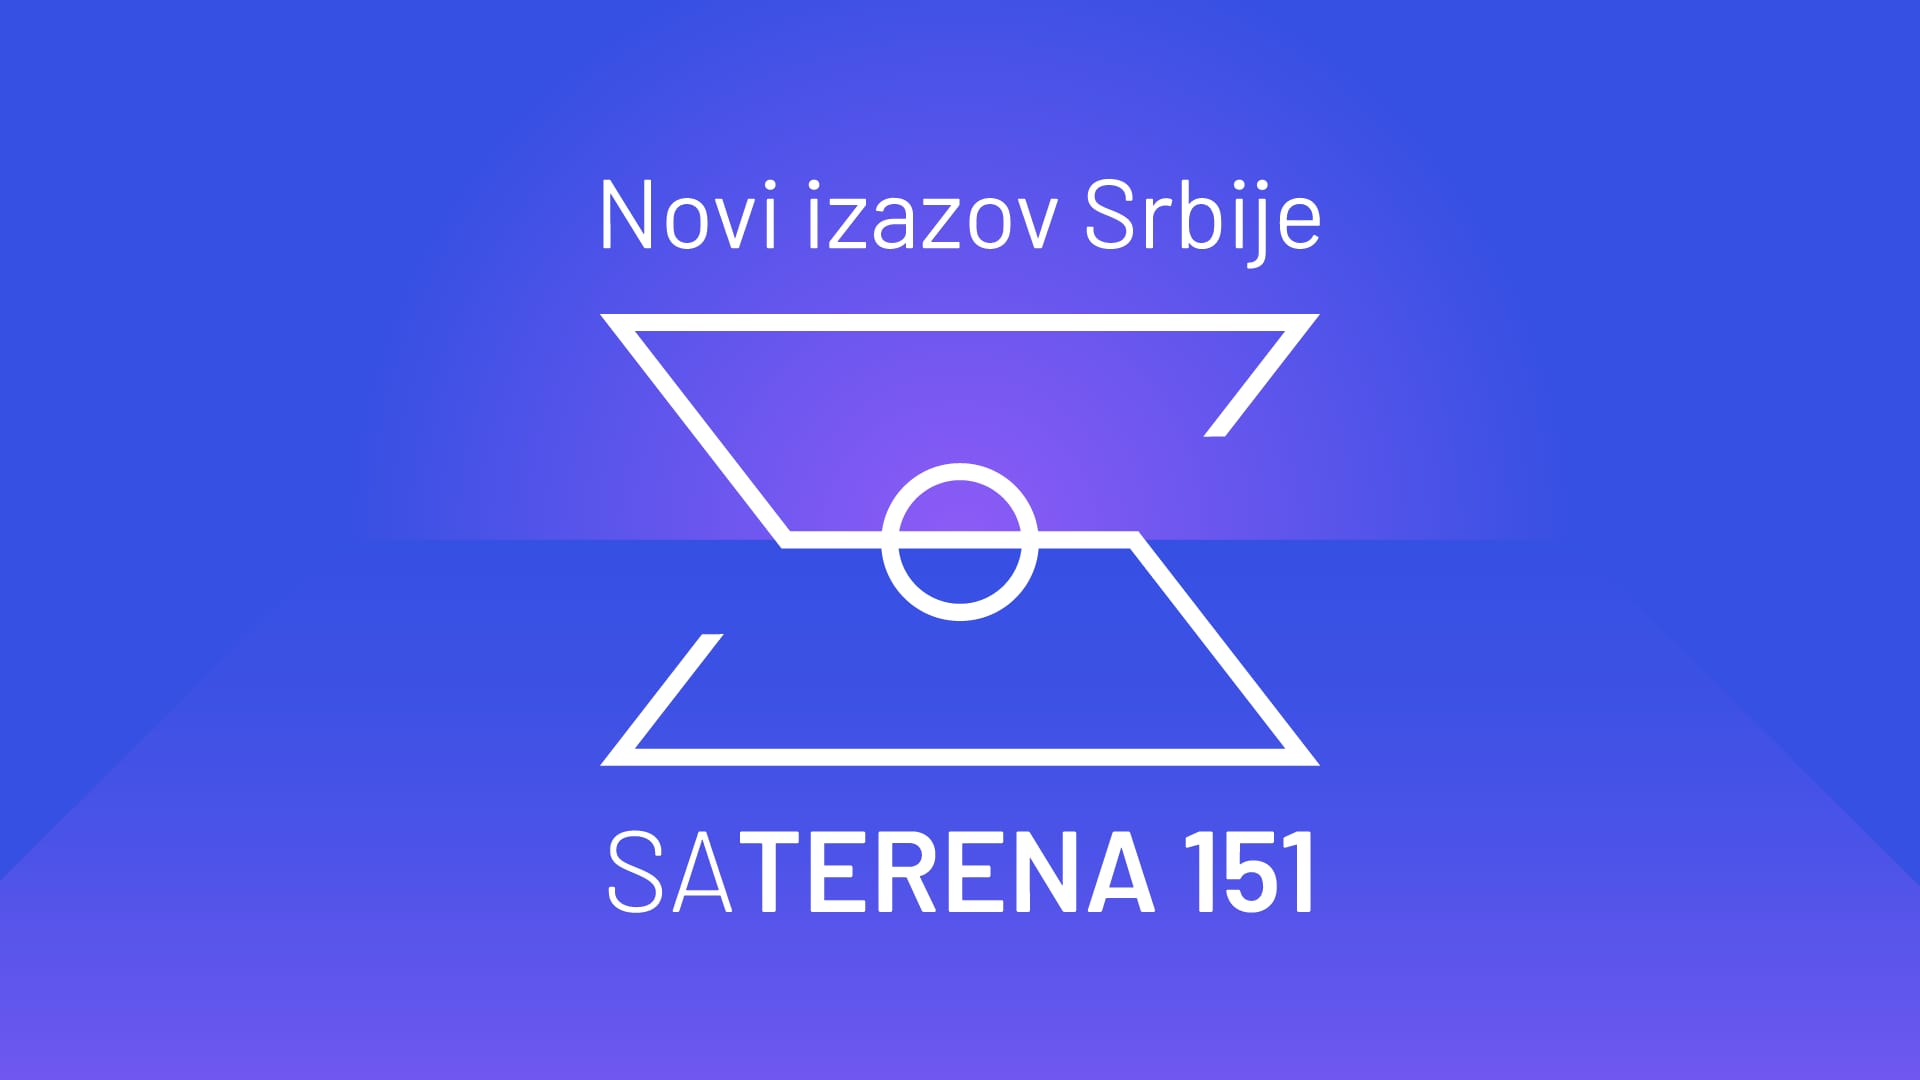 Sa terena 151: Novi izazov Srbije